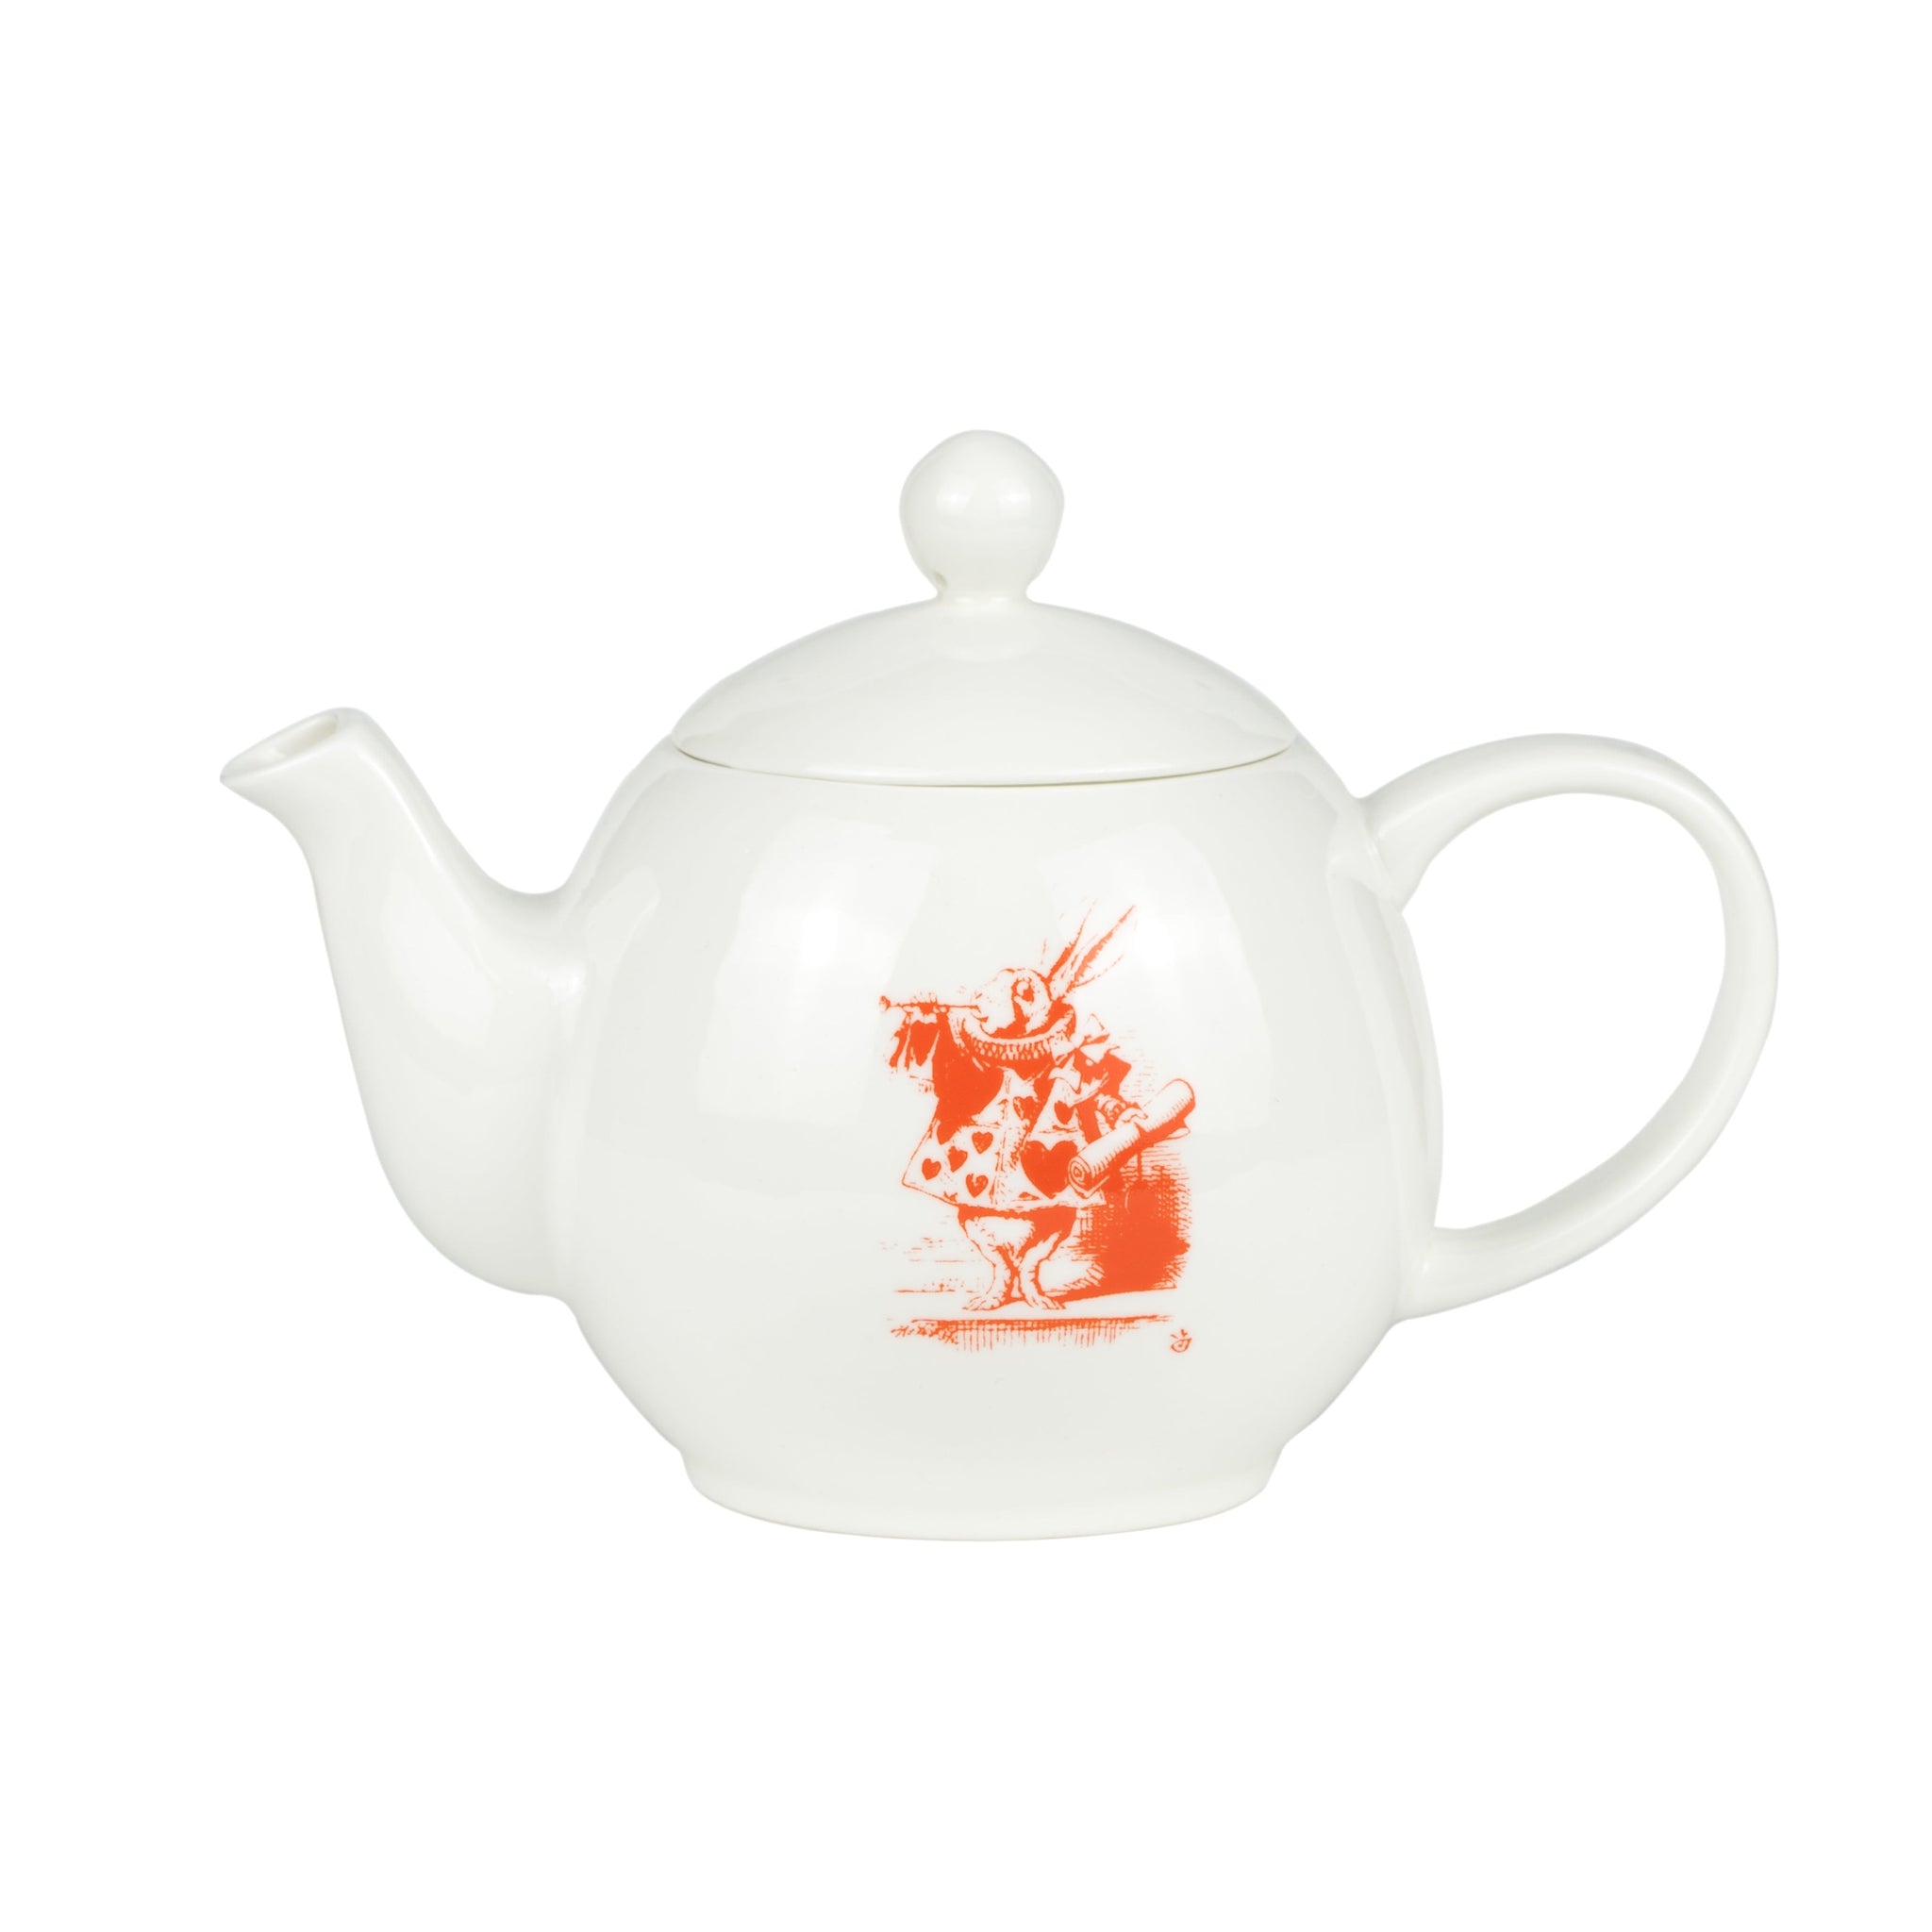 Alice & the White Rabbit Teapot